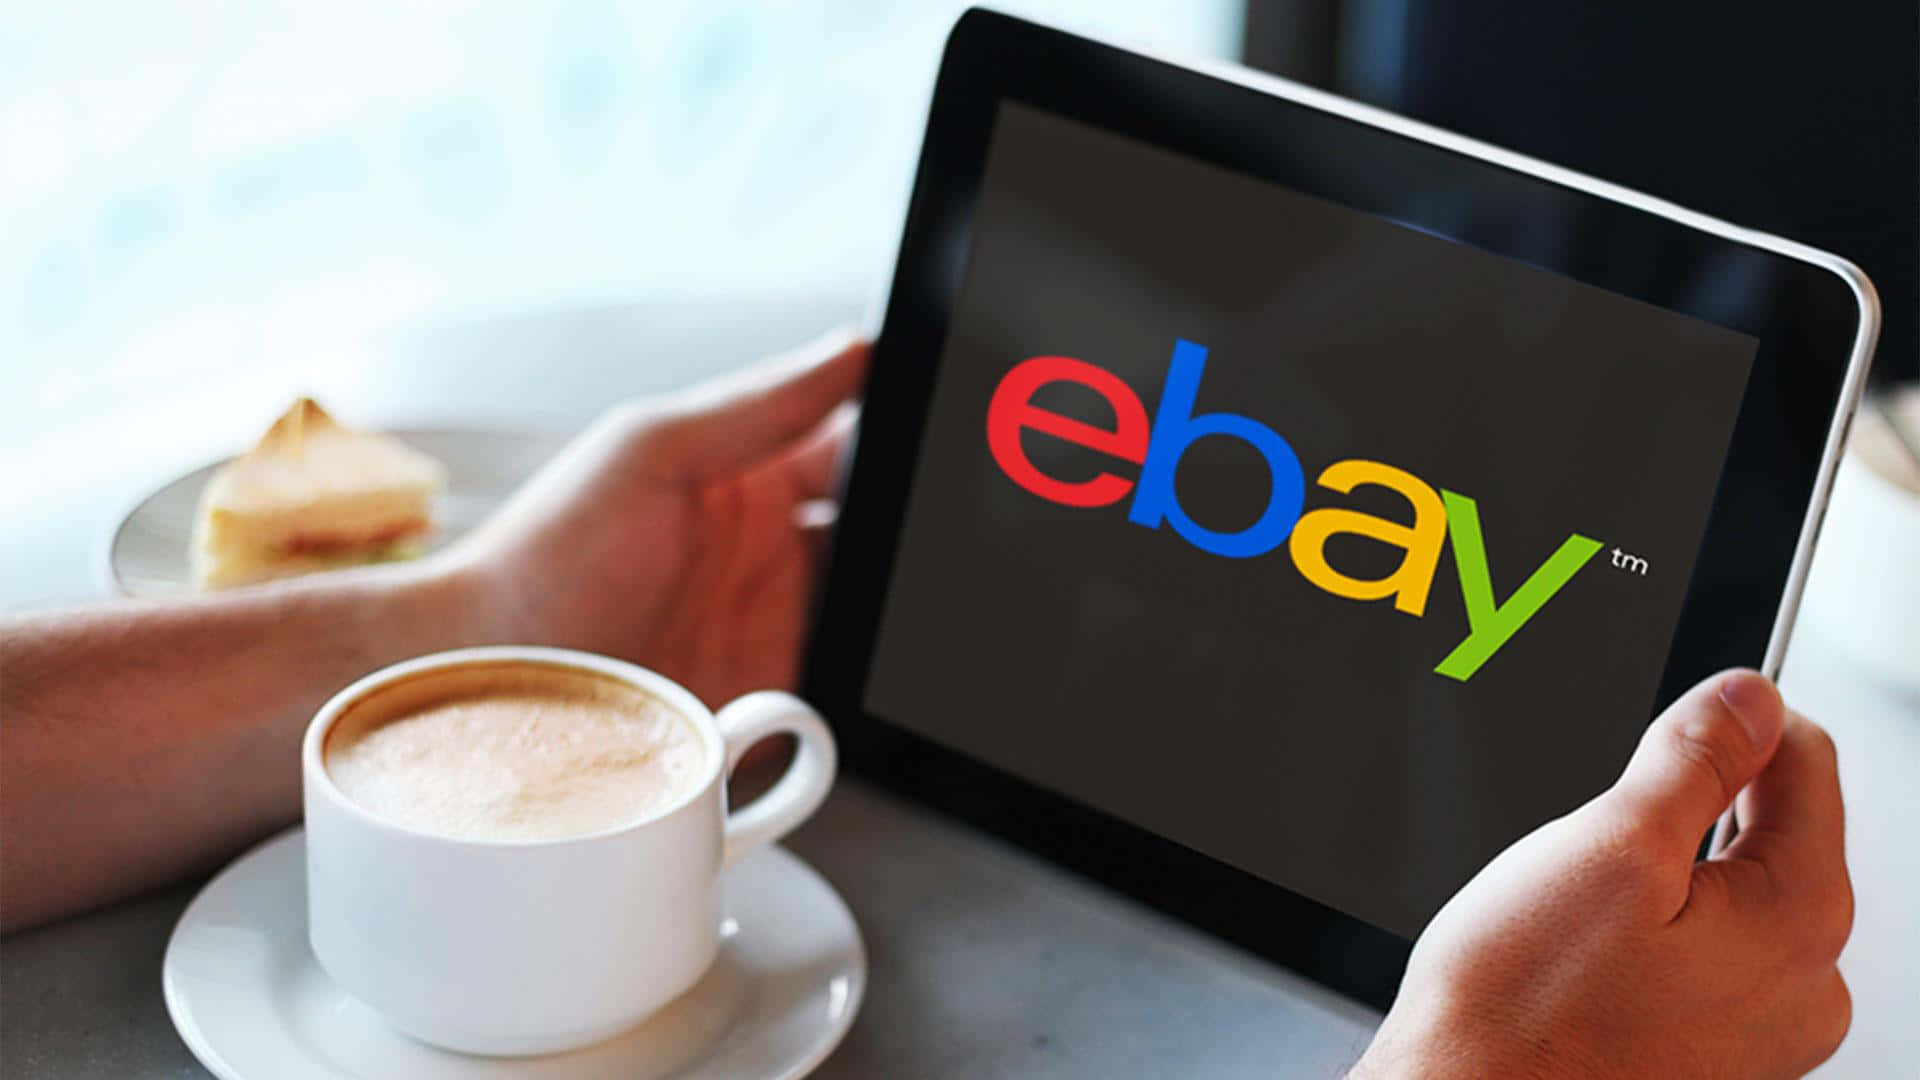 Logode Ebay Uk En Una Tablet Fondo de pantalla